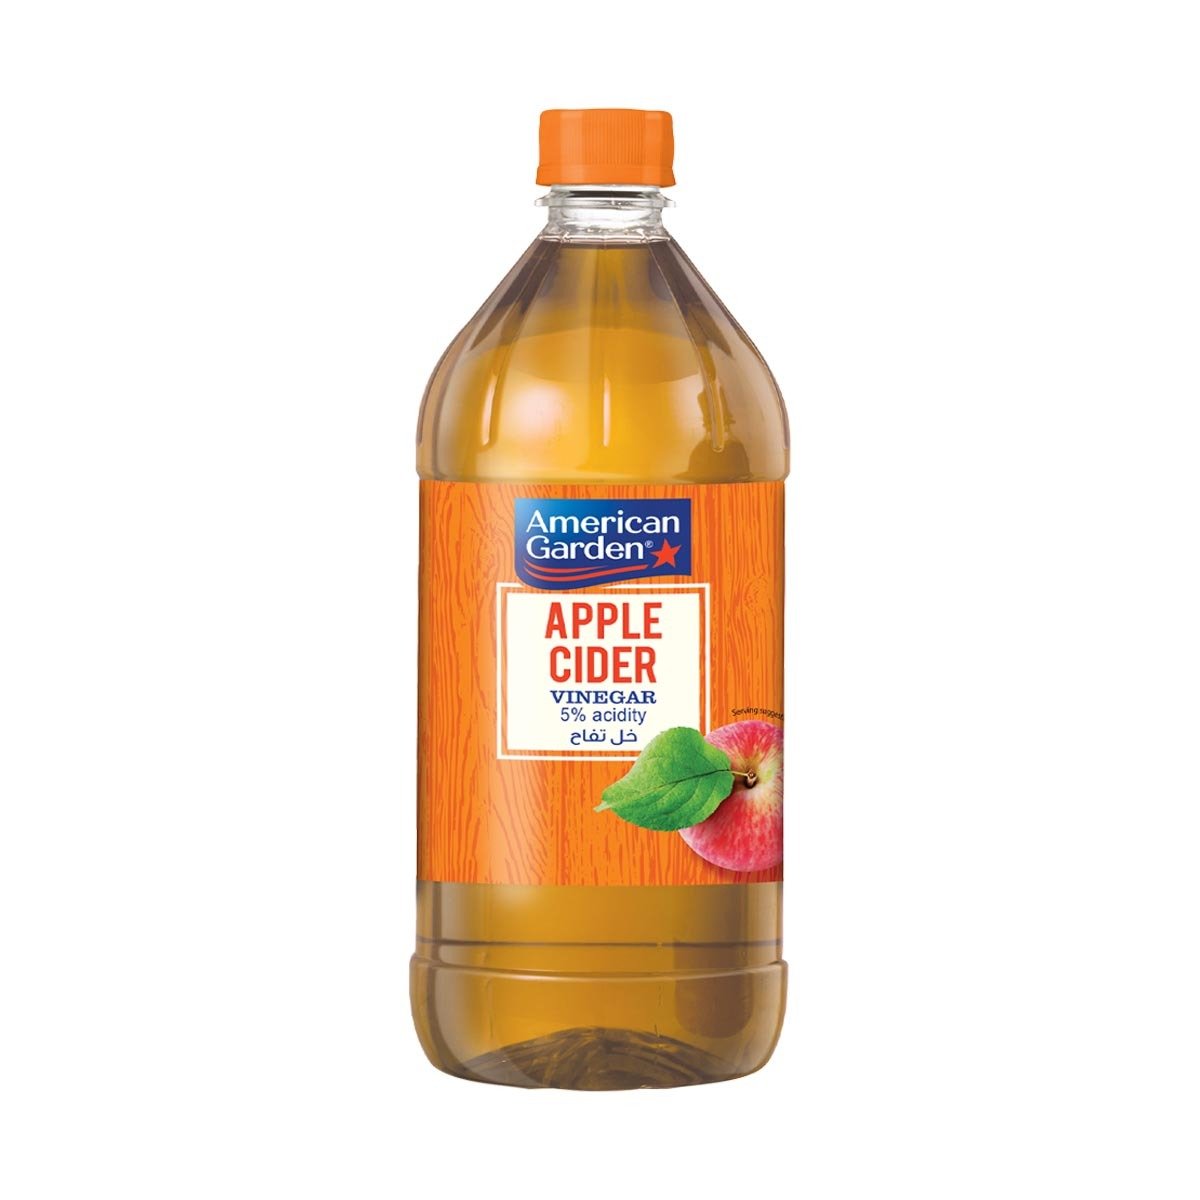 American Garden Apple Cider Vinegar Gluten-Free 473 ml